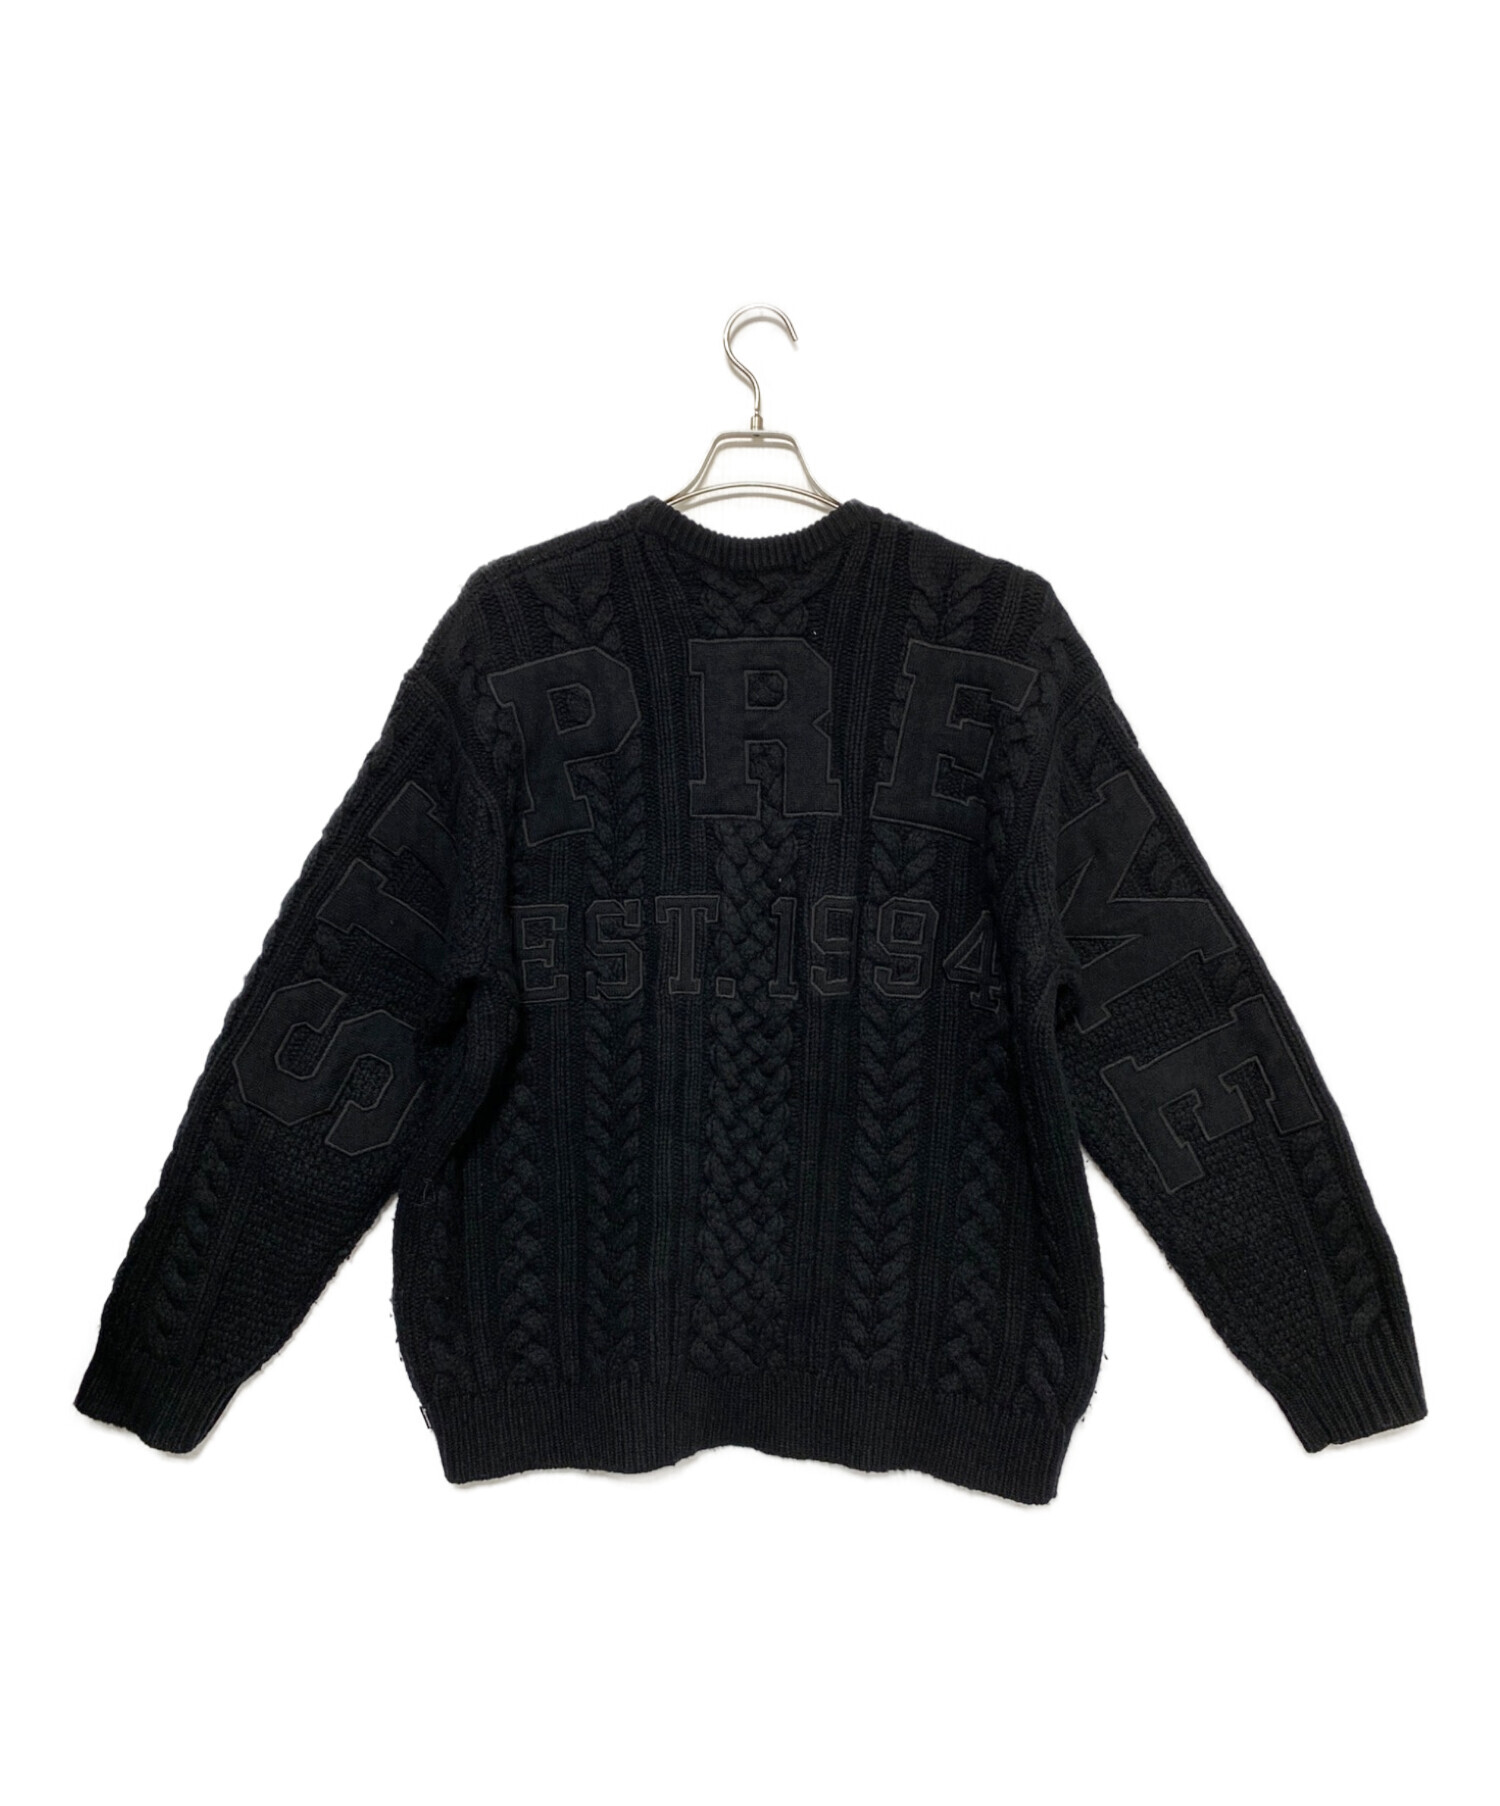 ニット/セーターSupreme Applique Cable Knit Sweater 黒 XL - www ...